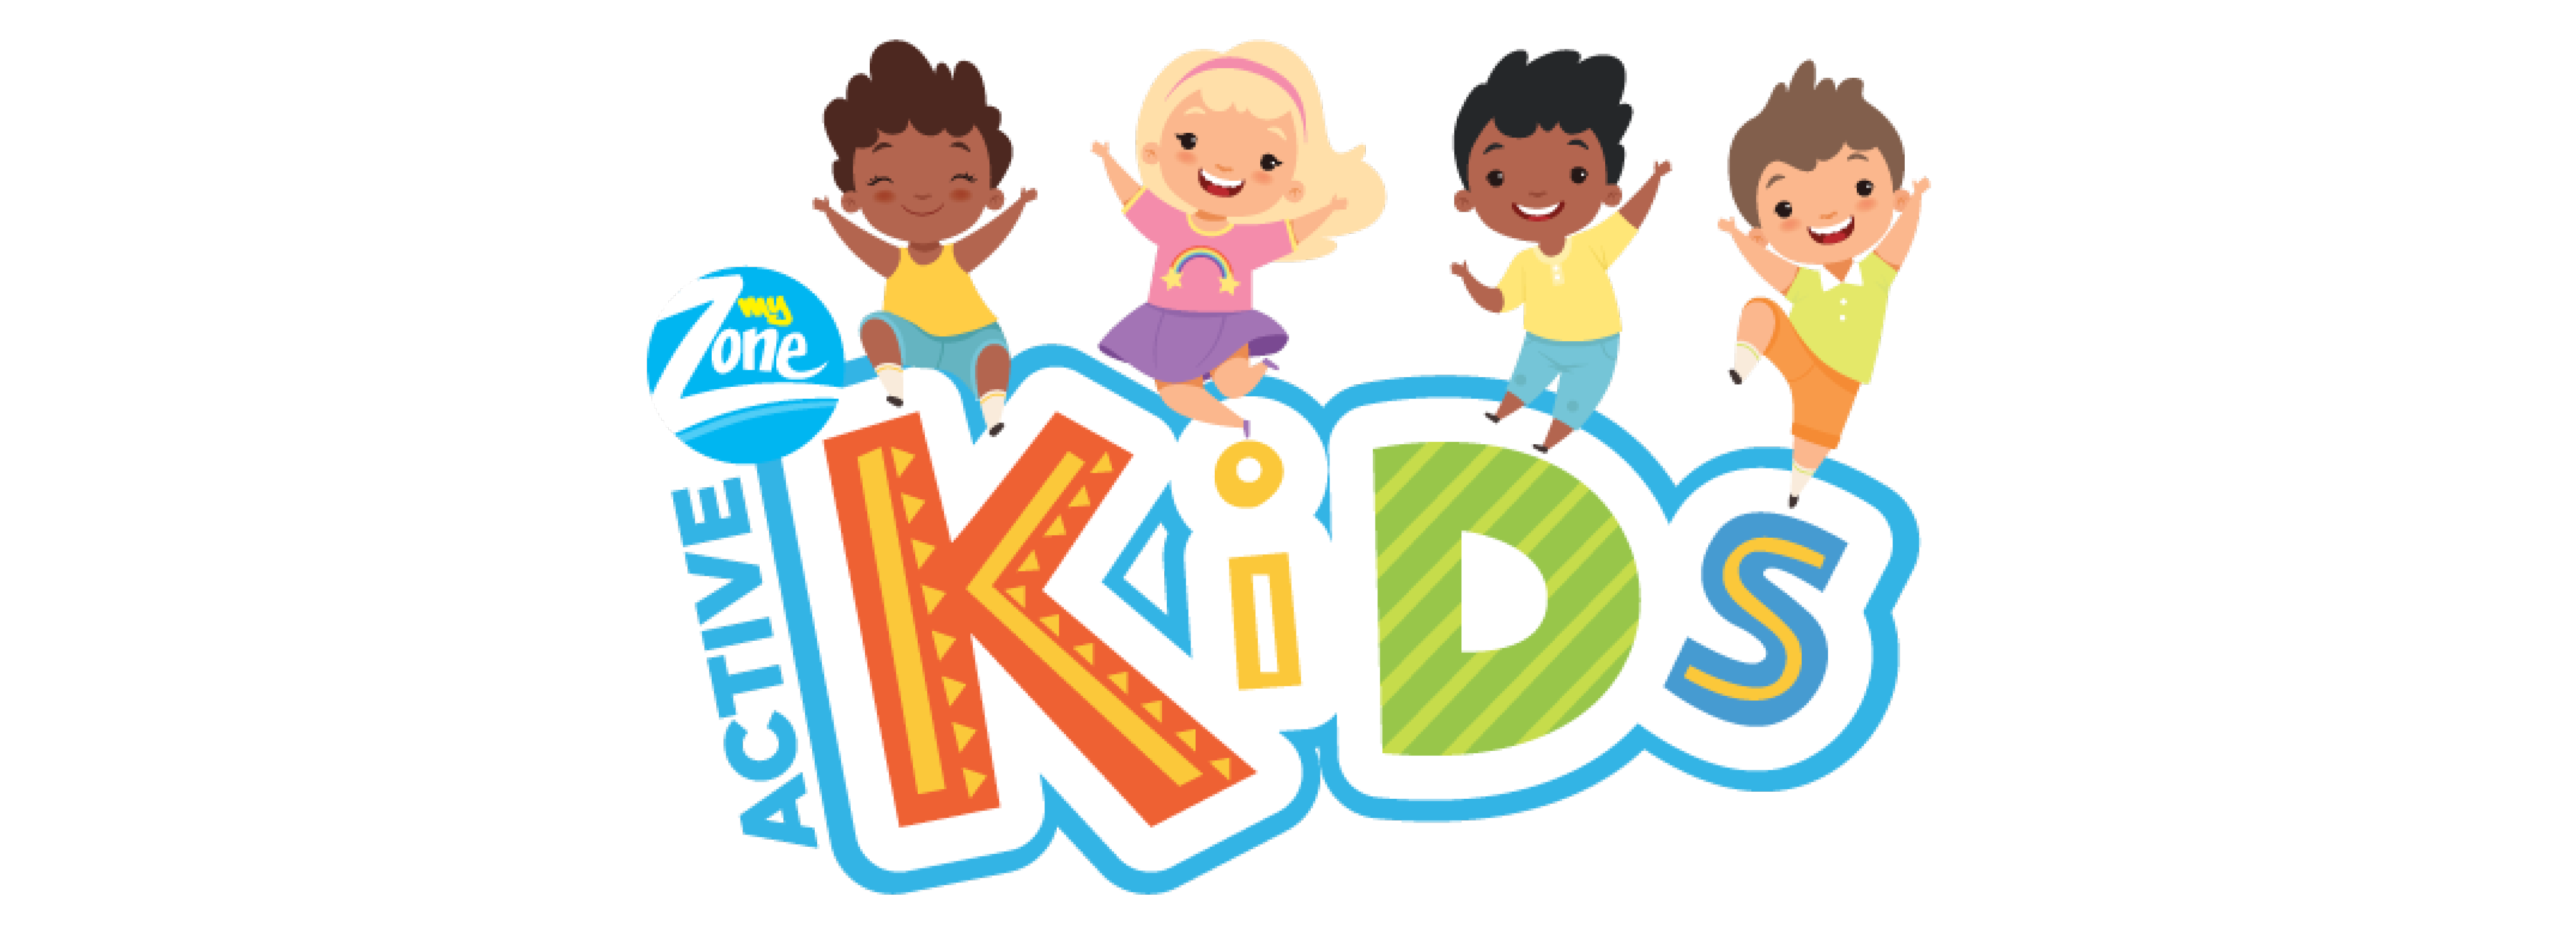 Active Kids episode 320 - 2 November 2021